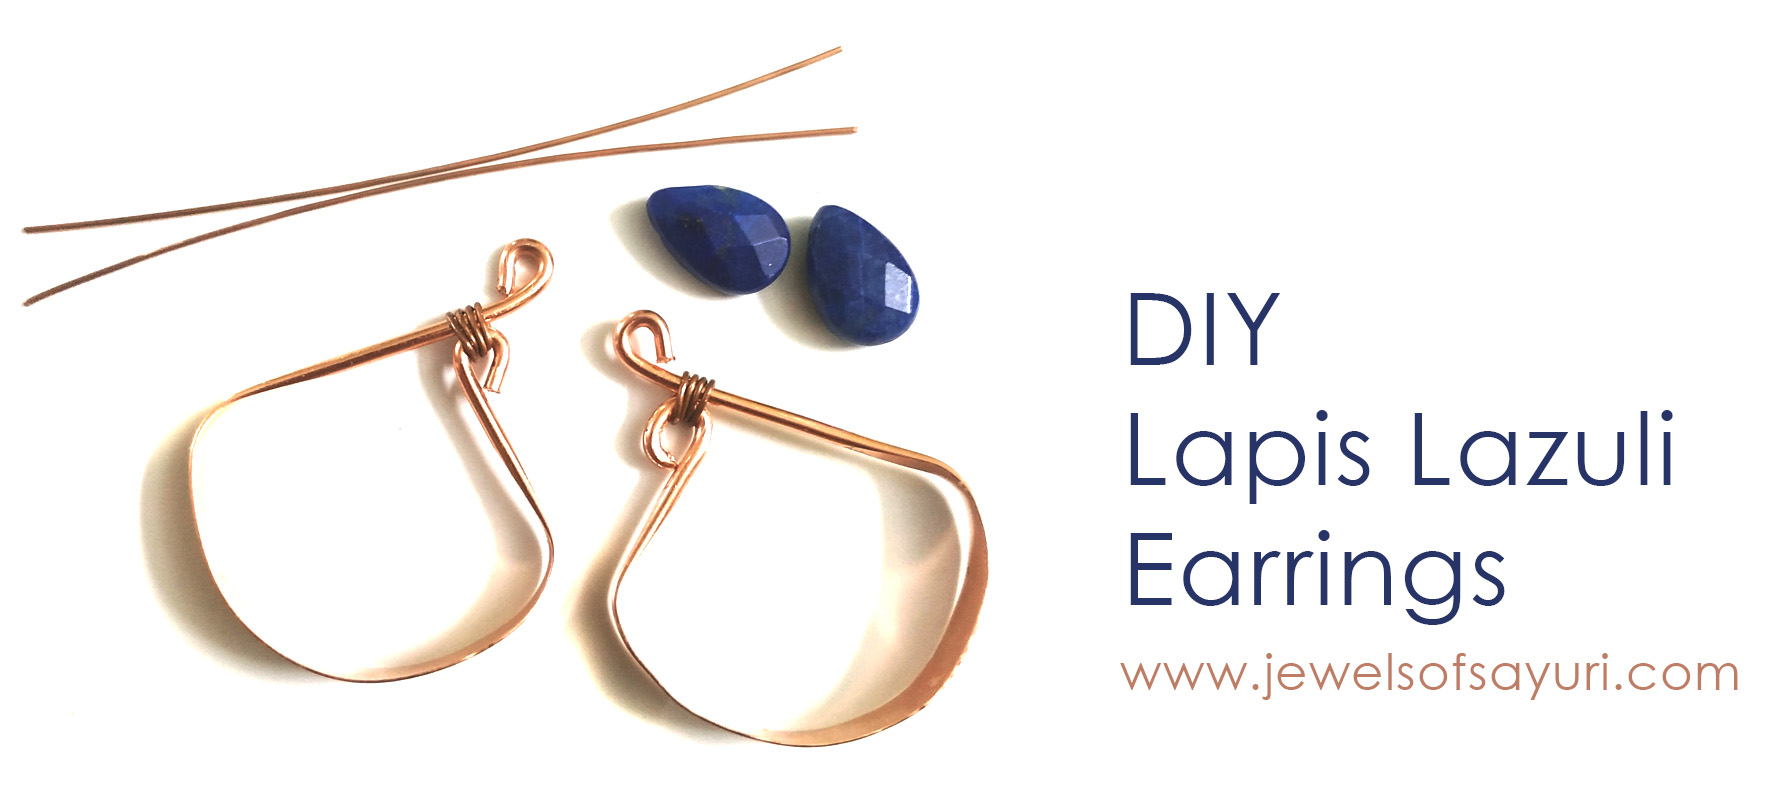 DIY Lapis Lazuli earrings1